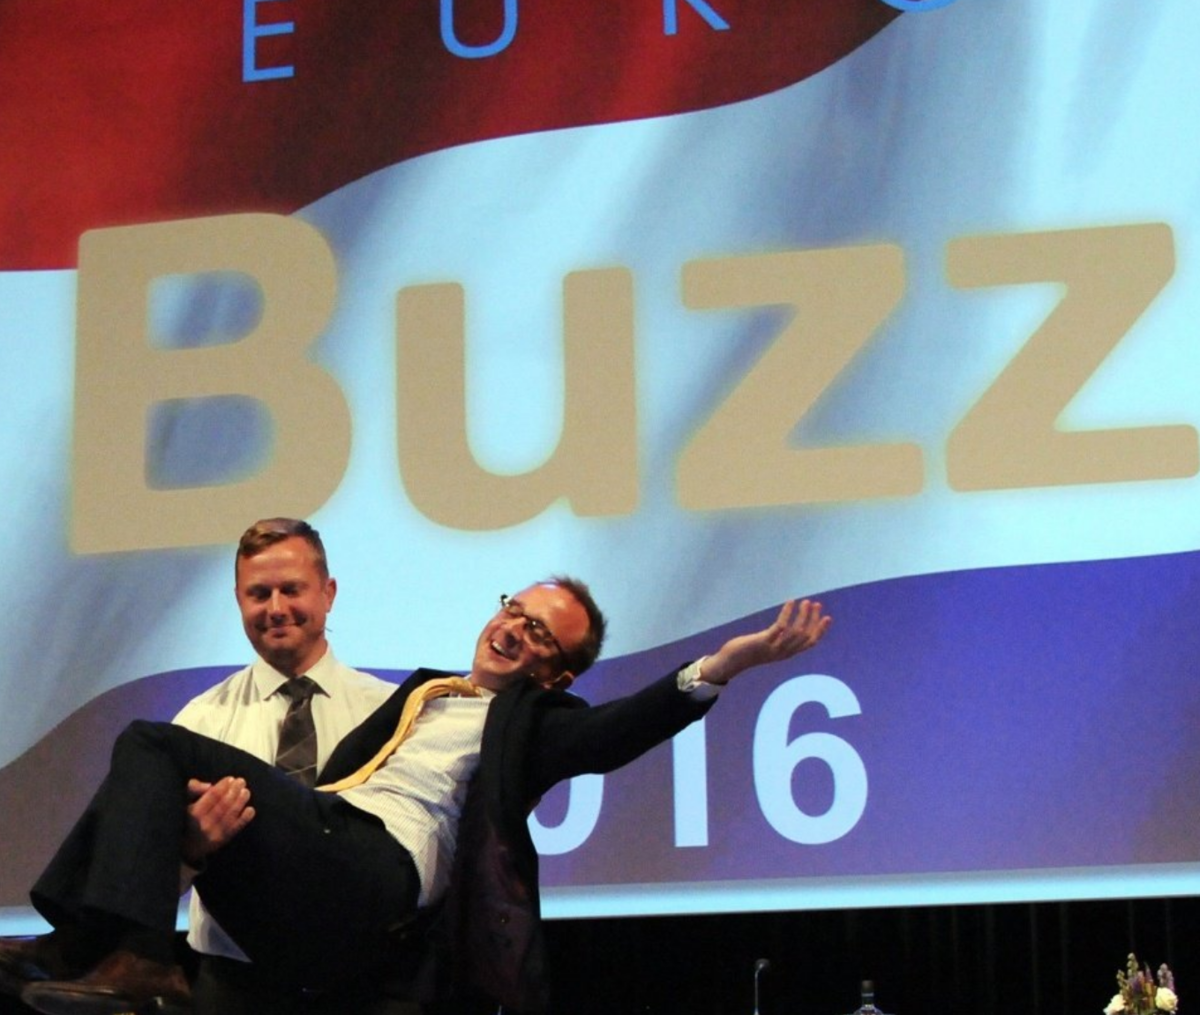 Jeff e Ed apresentaram o seu resumo das sessões no palco EuroBuzz 2016  